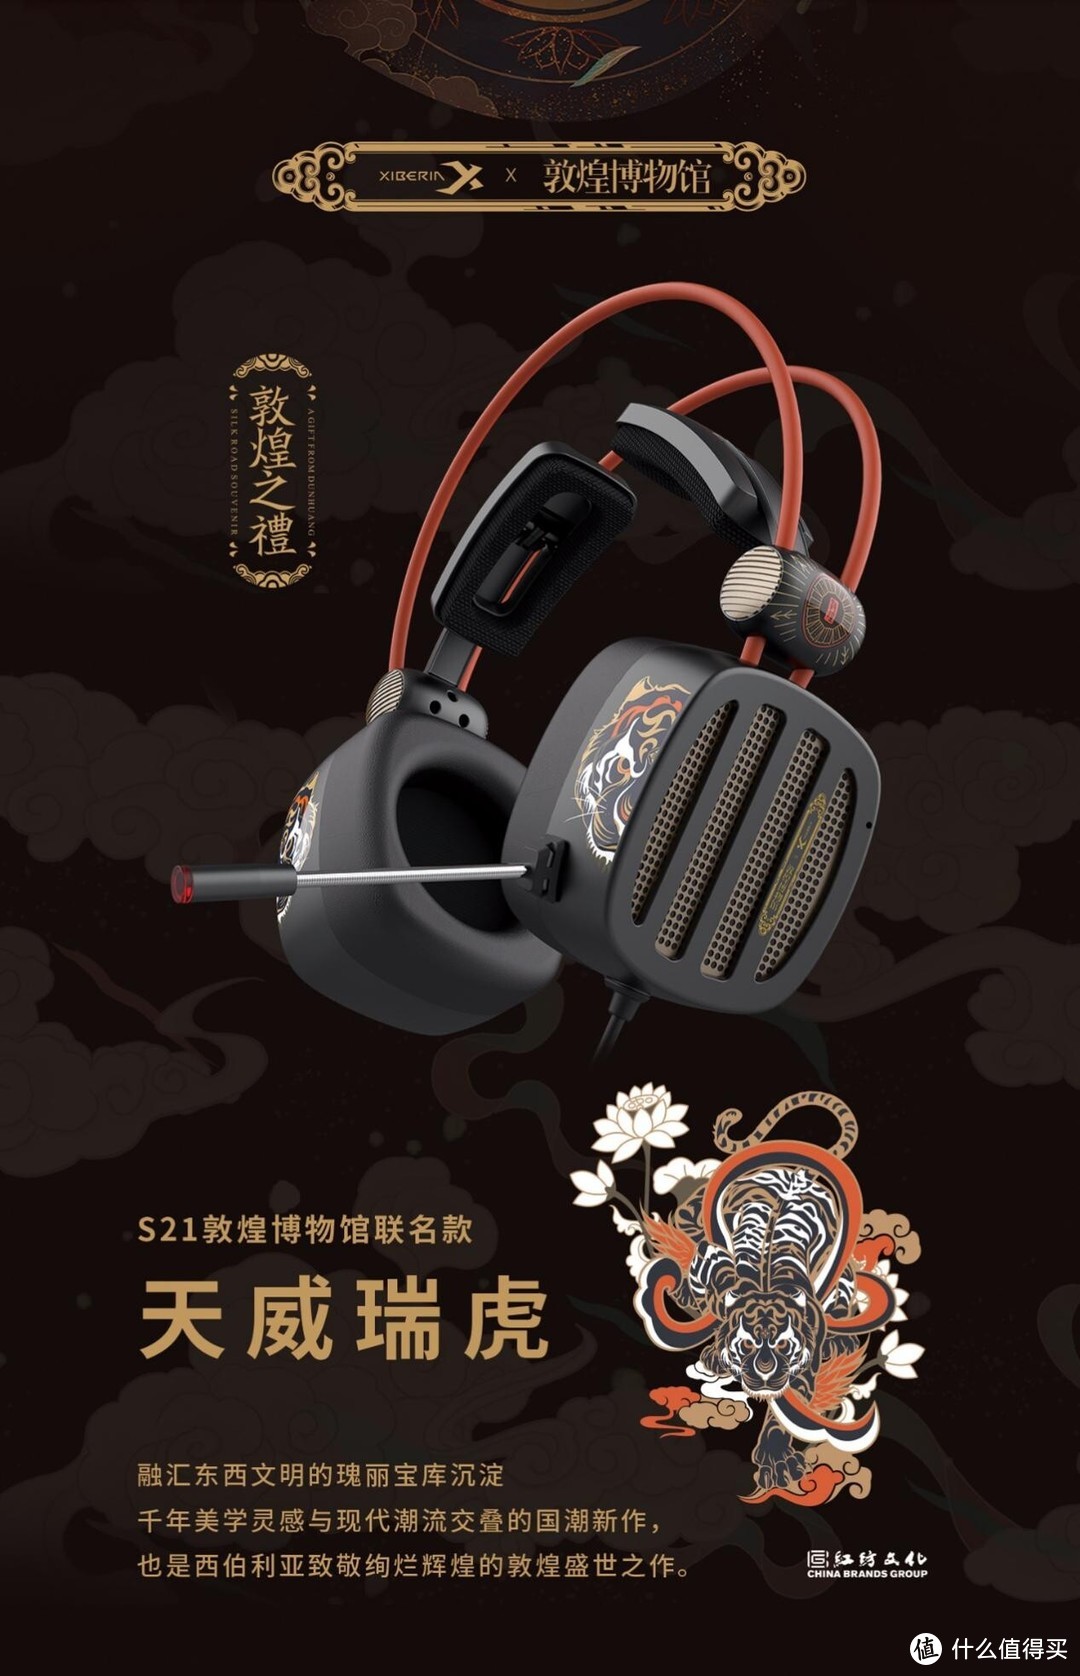 西伯利亚携手敦煌博物馆 首款产品S21联名款耳机曝光